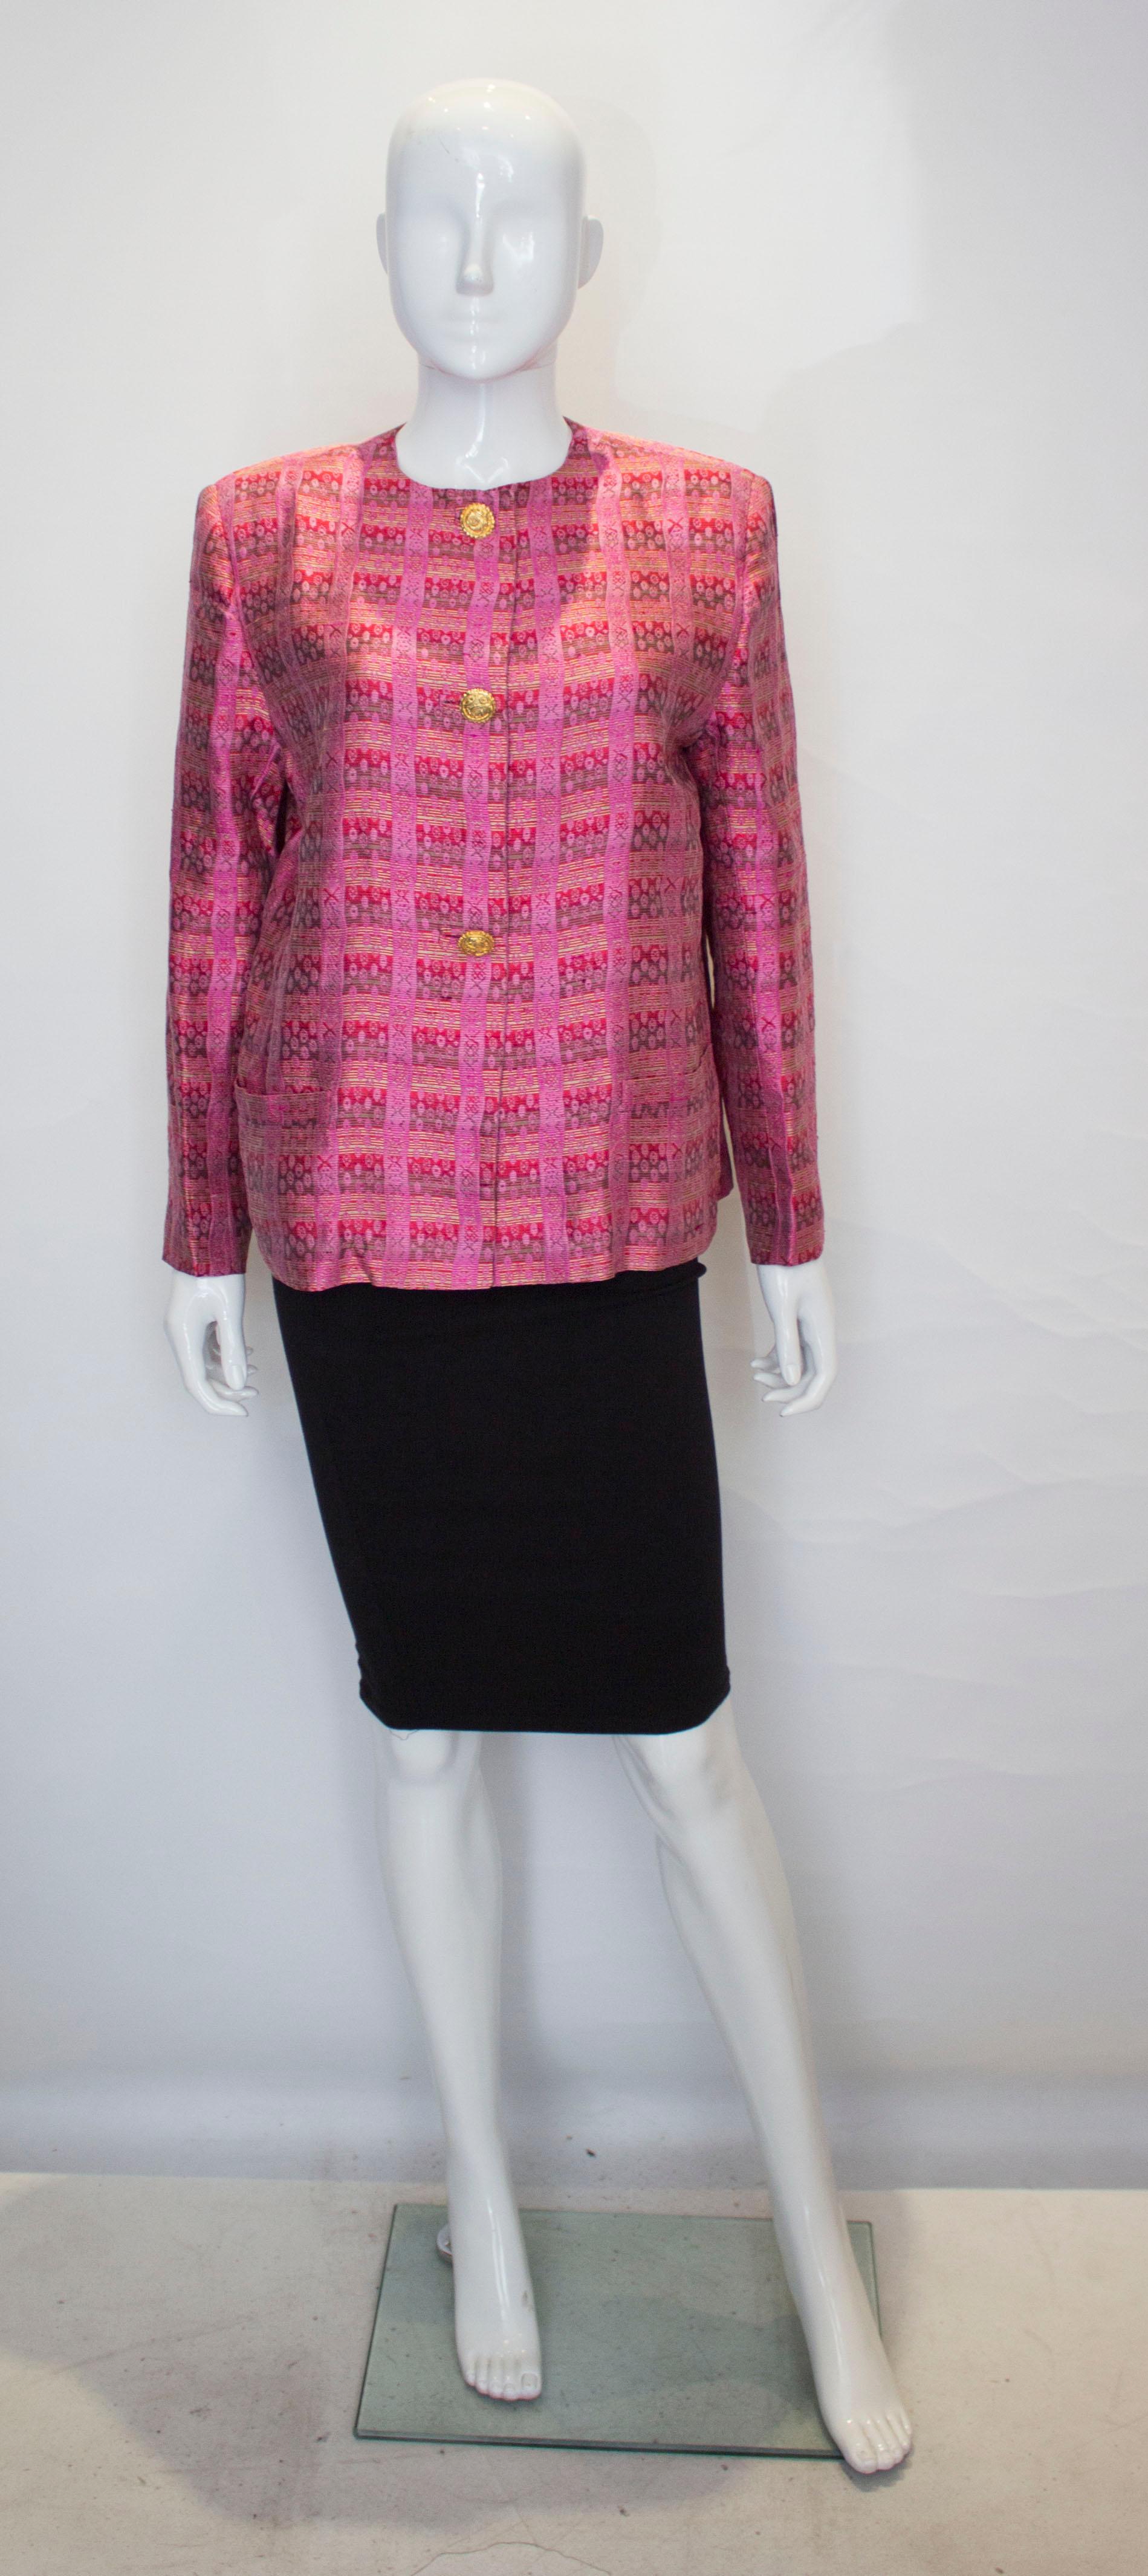 Une jolie veste en soie rose vintage de Mario Valentino. La veste est en rose avec des détails en kahki, rouge et vert pâle. Il est sans col et se ferme par un bouton central sur le devant. Il possède une poche de chaque côté, au niveau de la hanche.